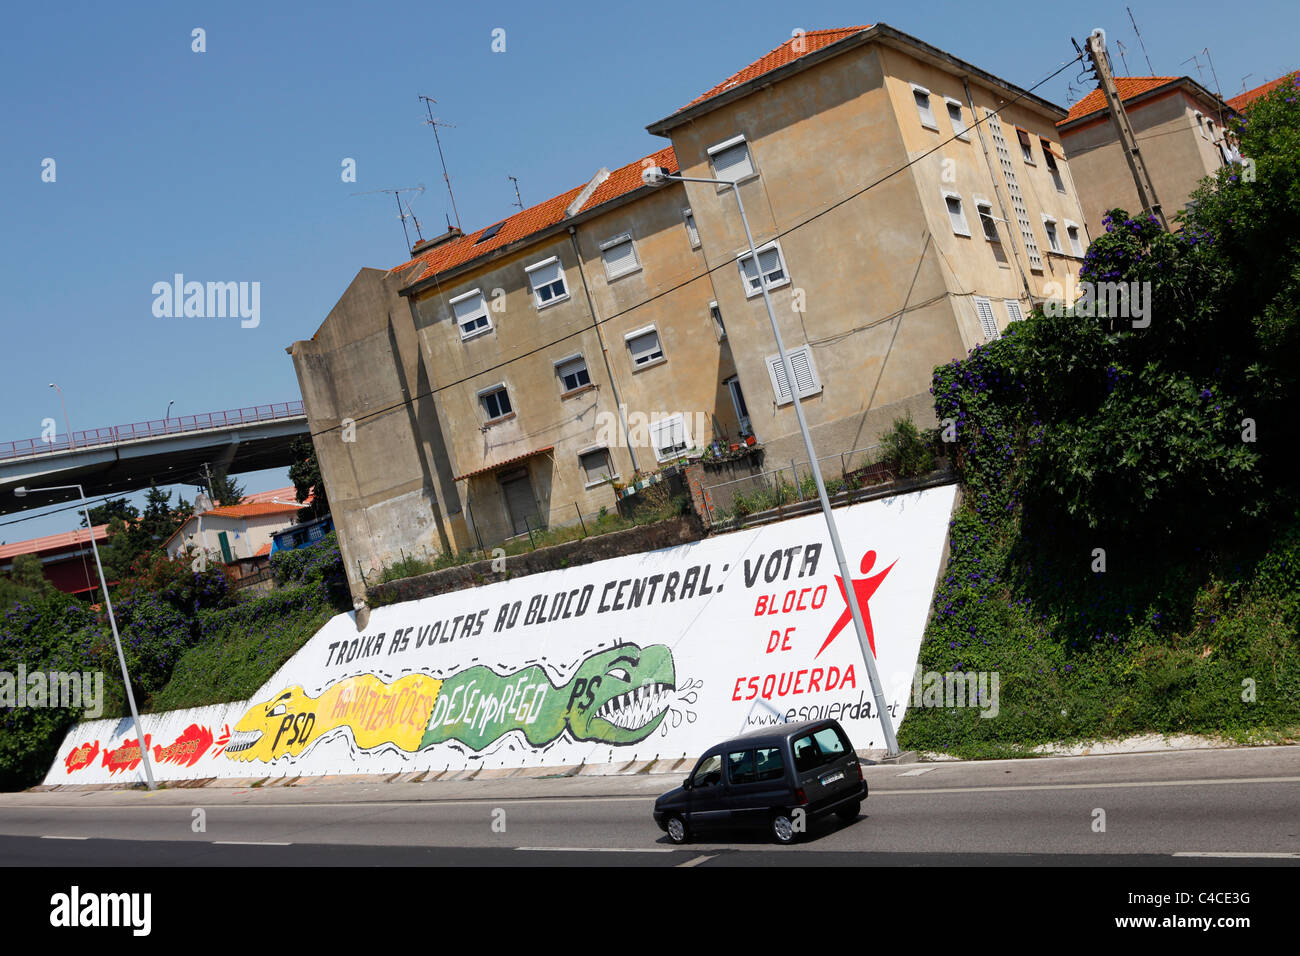 Des slogans politiques de gauche appel pour une "troïka" comme une alternative au bloc central à Lisbonne, Portugal. Banque D'Images